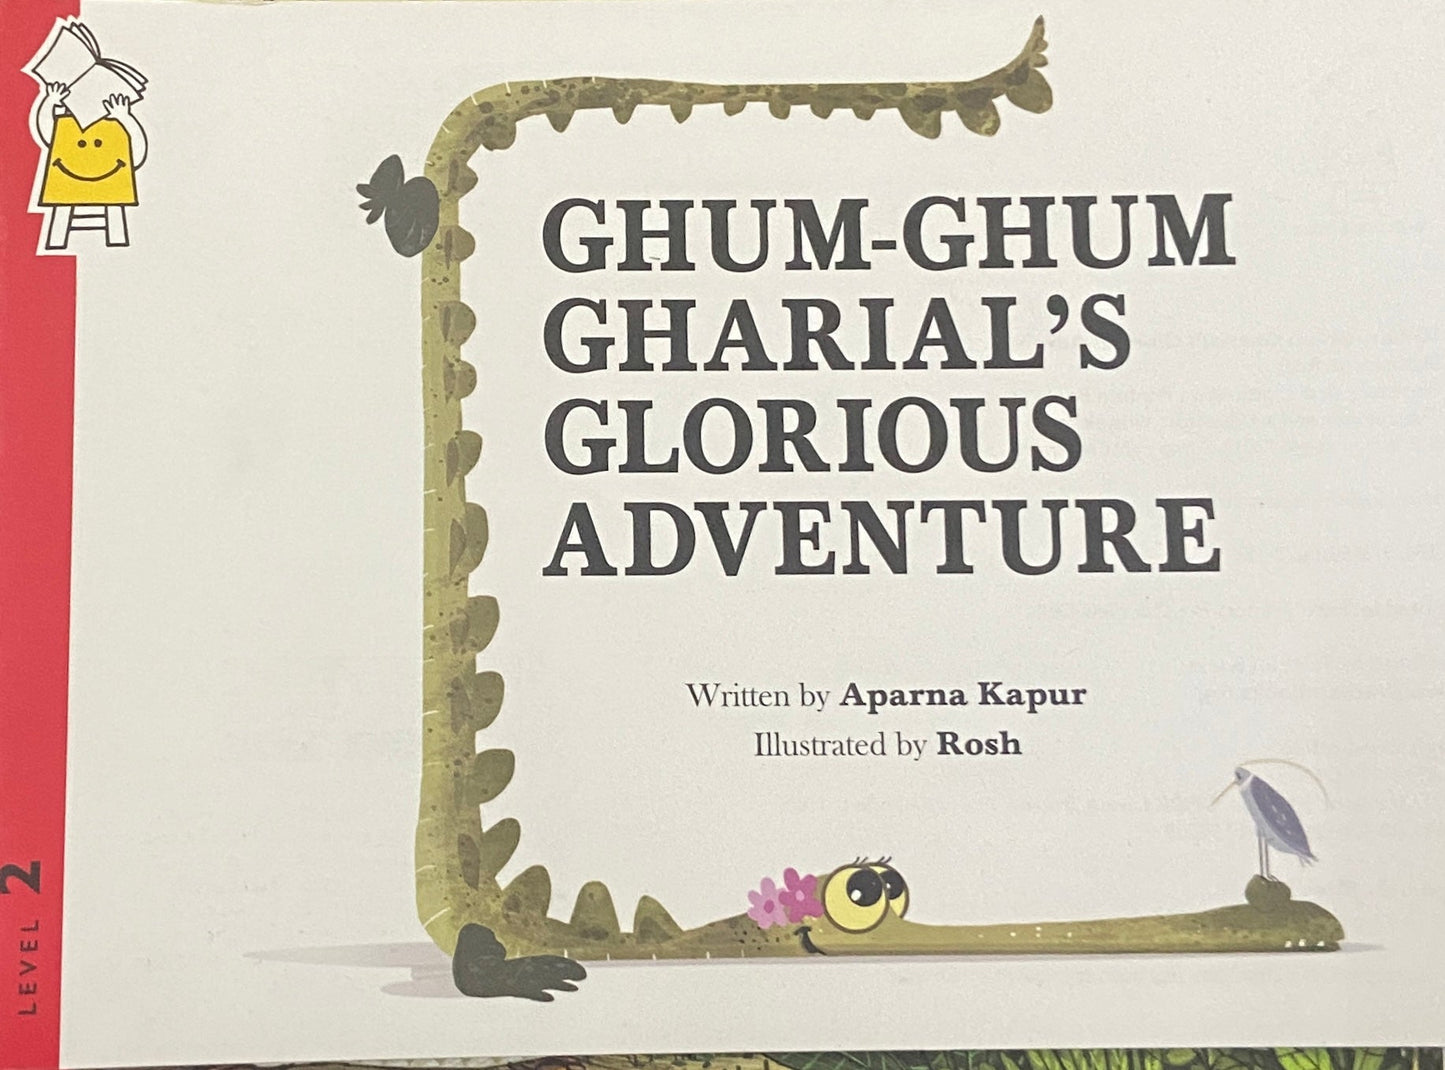 Ghum Ghum Gharial's Glorious Adventure by Aparna Kapoor